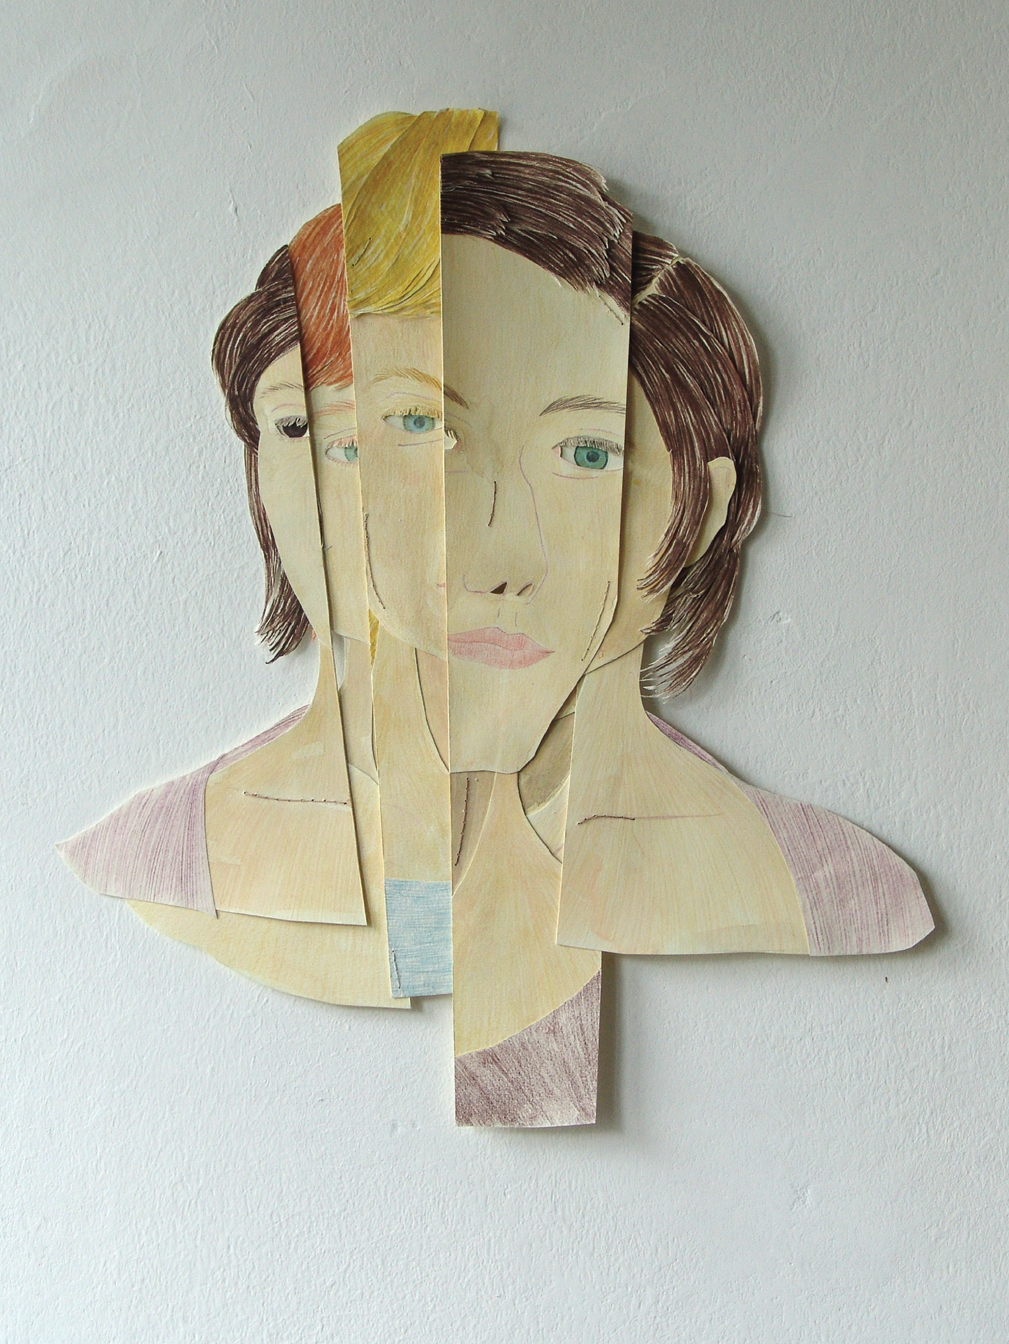 fragmentiertes Portrait aus der Serie "Identitäten", o.T. Farb- und Bleistift, Aquarell auf Papier, Zwirn, 39 x 34 cm, 2016 (c) Iris Christine Aue